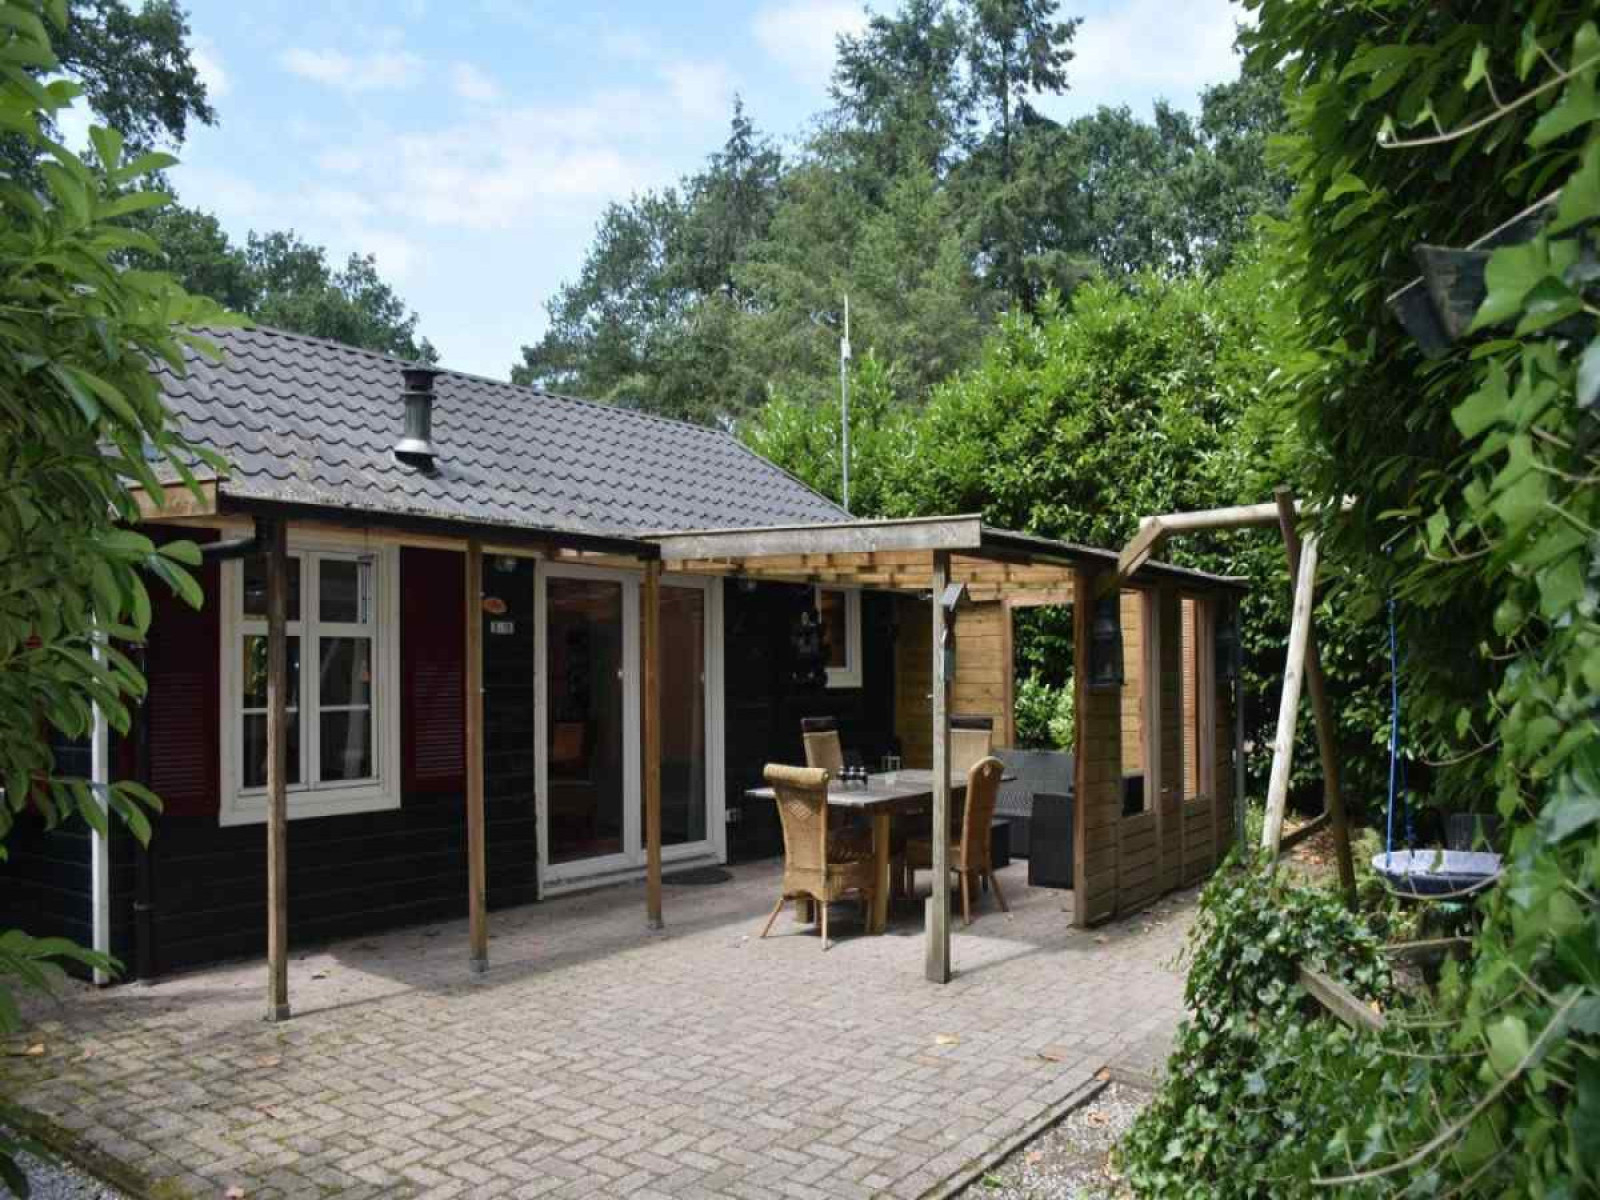 Heerlijkehuisjes.nl Knus 4 persoons vakantiehuis nabij Ommen in het Sallandse landschap. - Nederland - Europa - Beerze